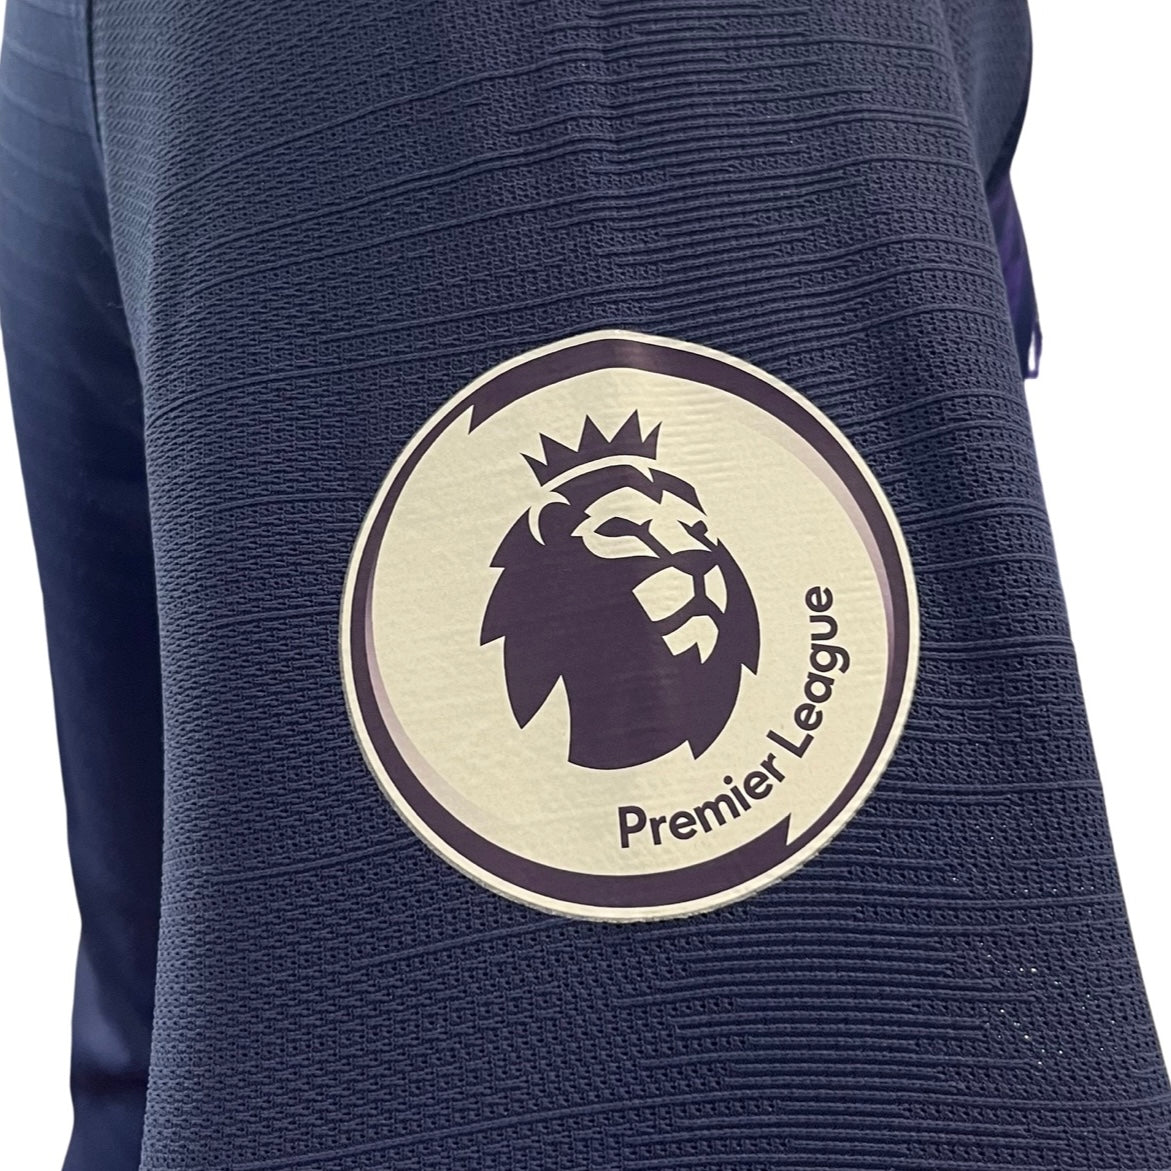 Son Heung-Min Match Worn Tottenham Hotspur Nike Vaporknit Shirt – BC Boots  UK